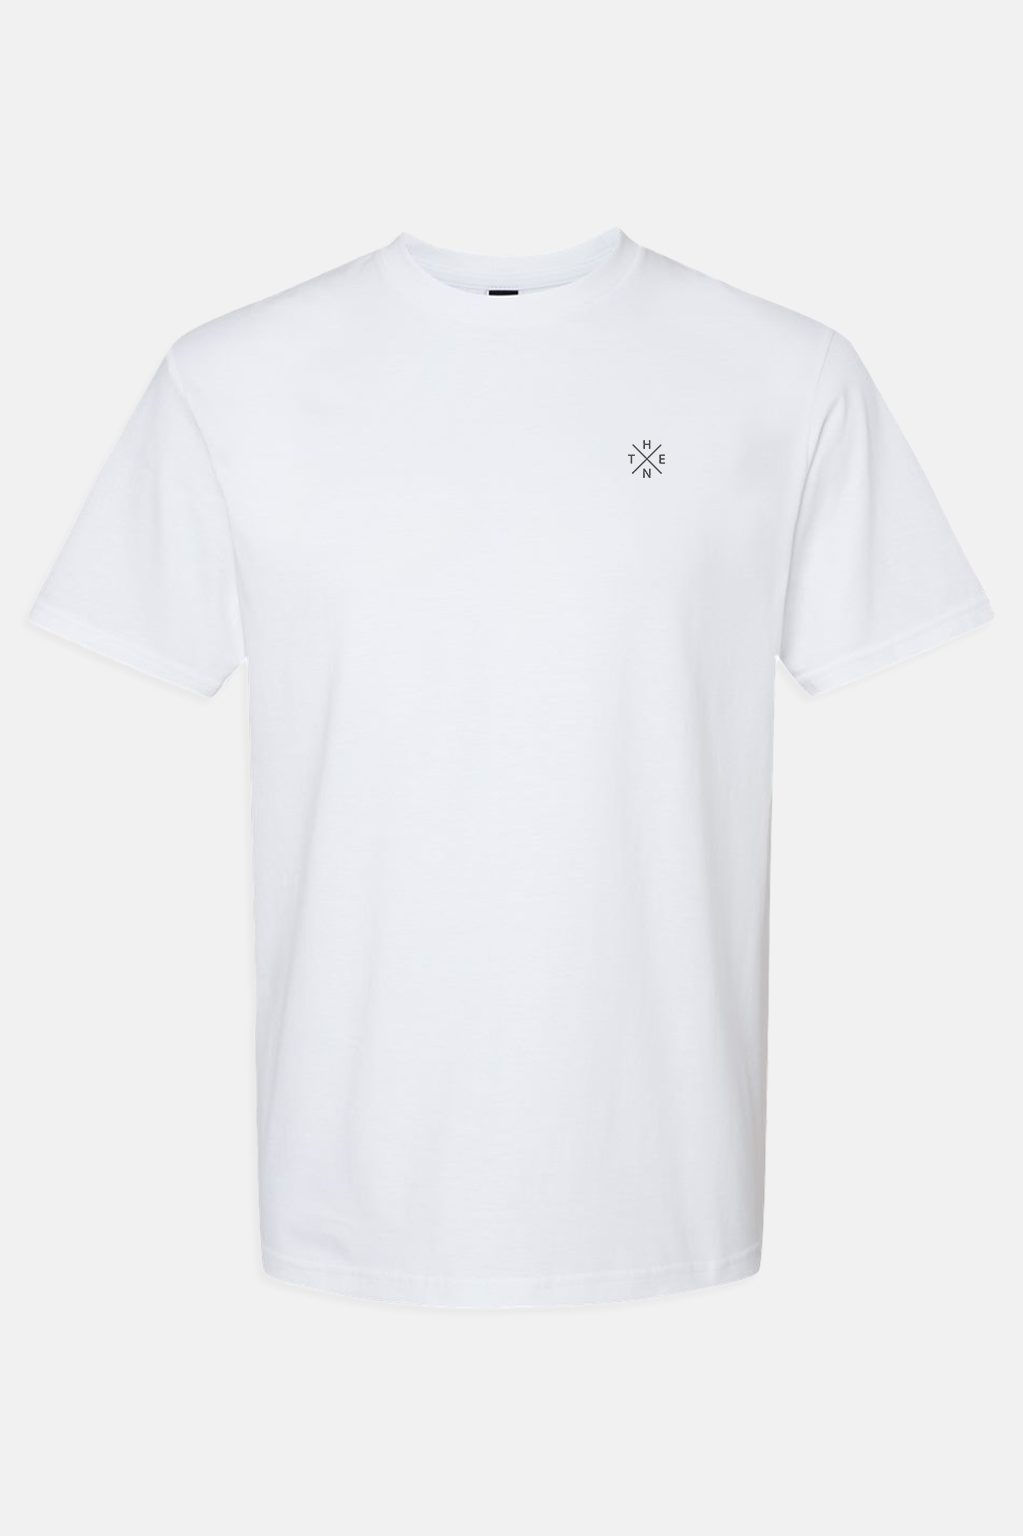 Thenx 3M XX T-Shirt - White - THENX